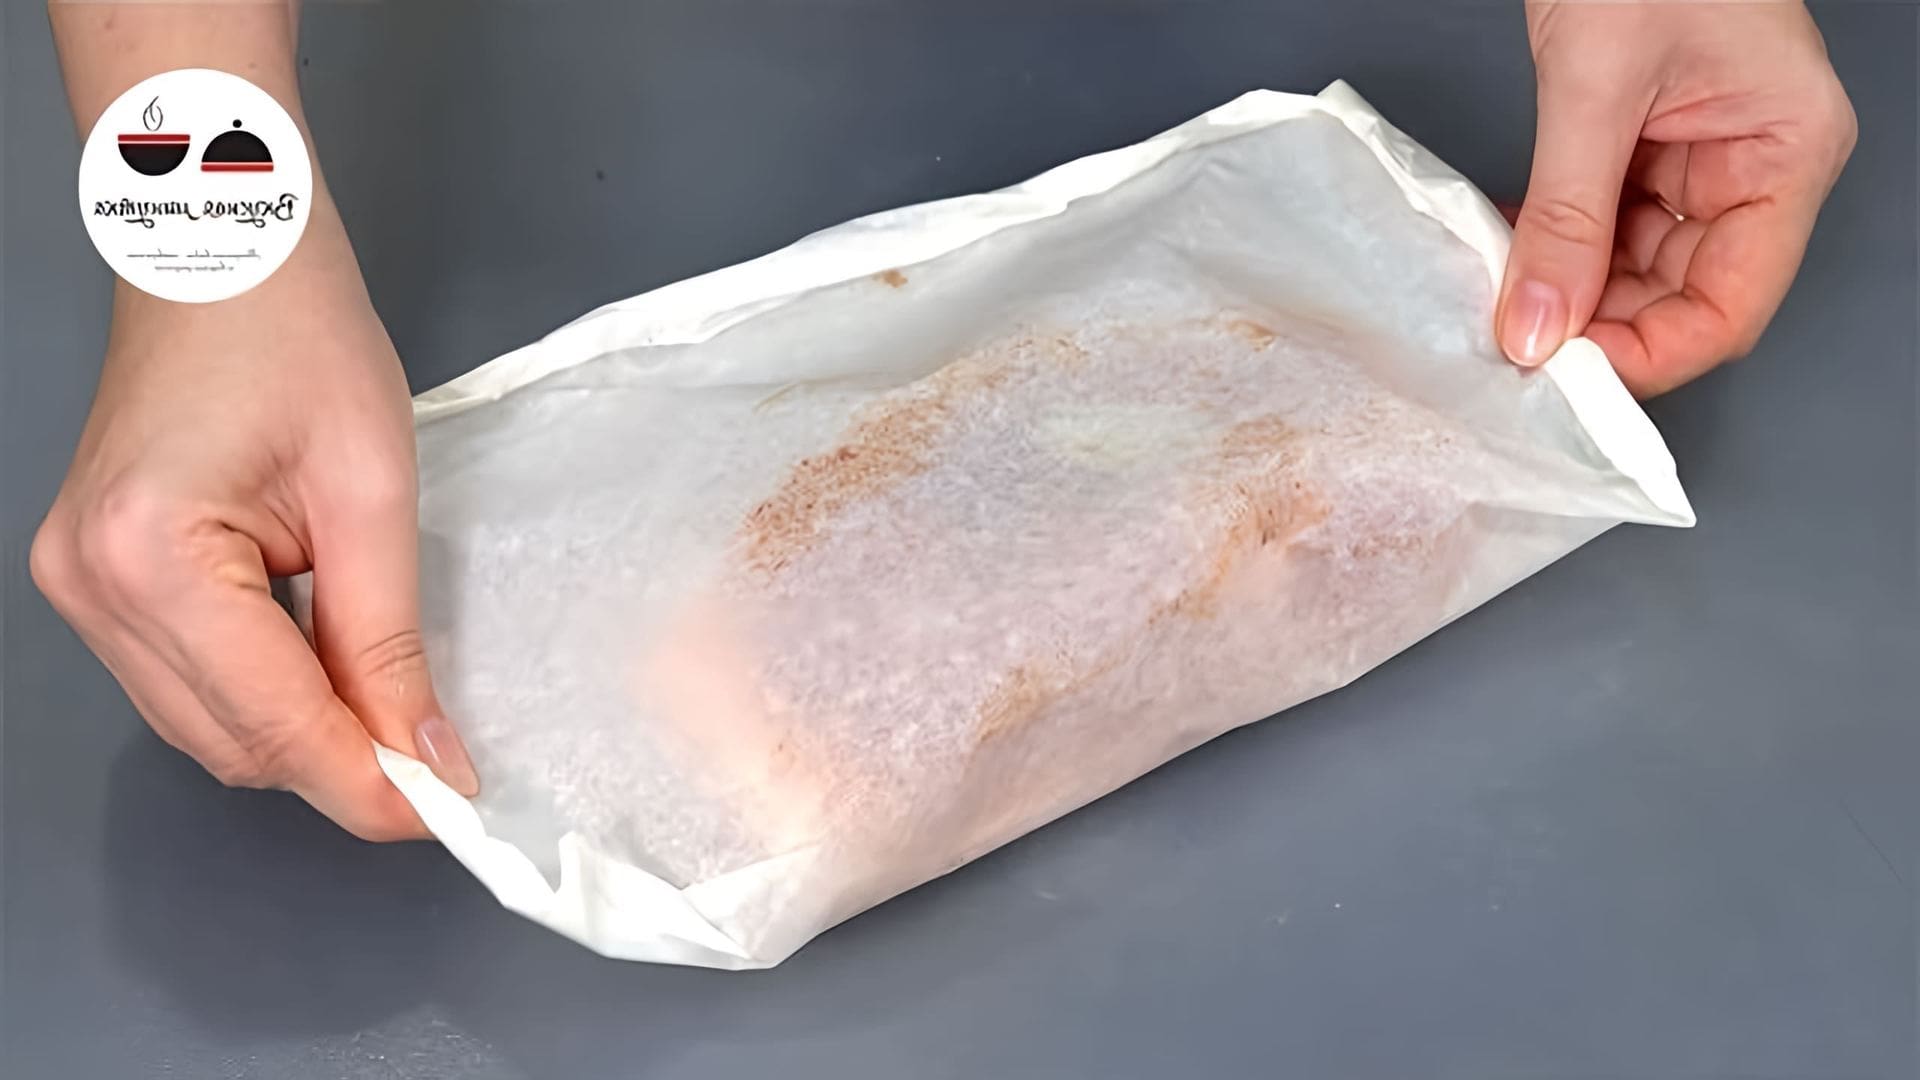 В этом видео демонстрируется простой и вкусный способ приготовления запеченной свиной грудинки